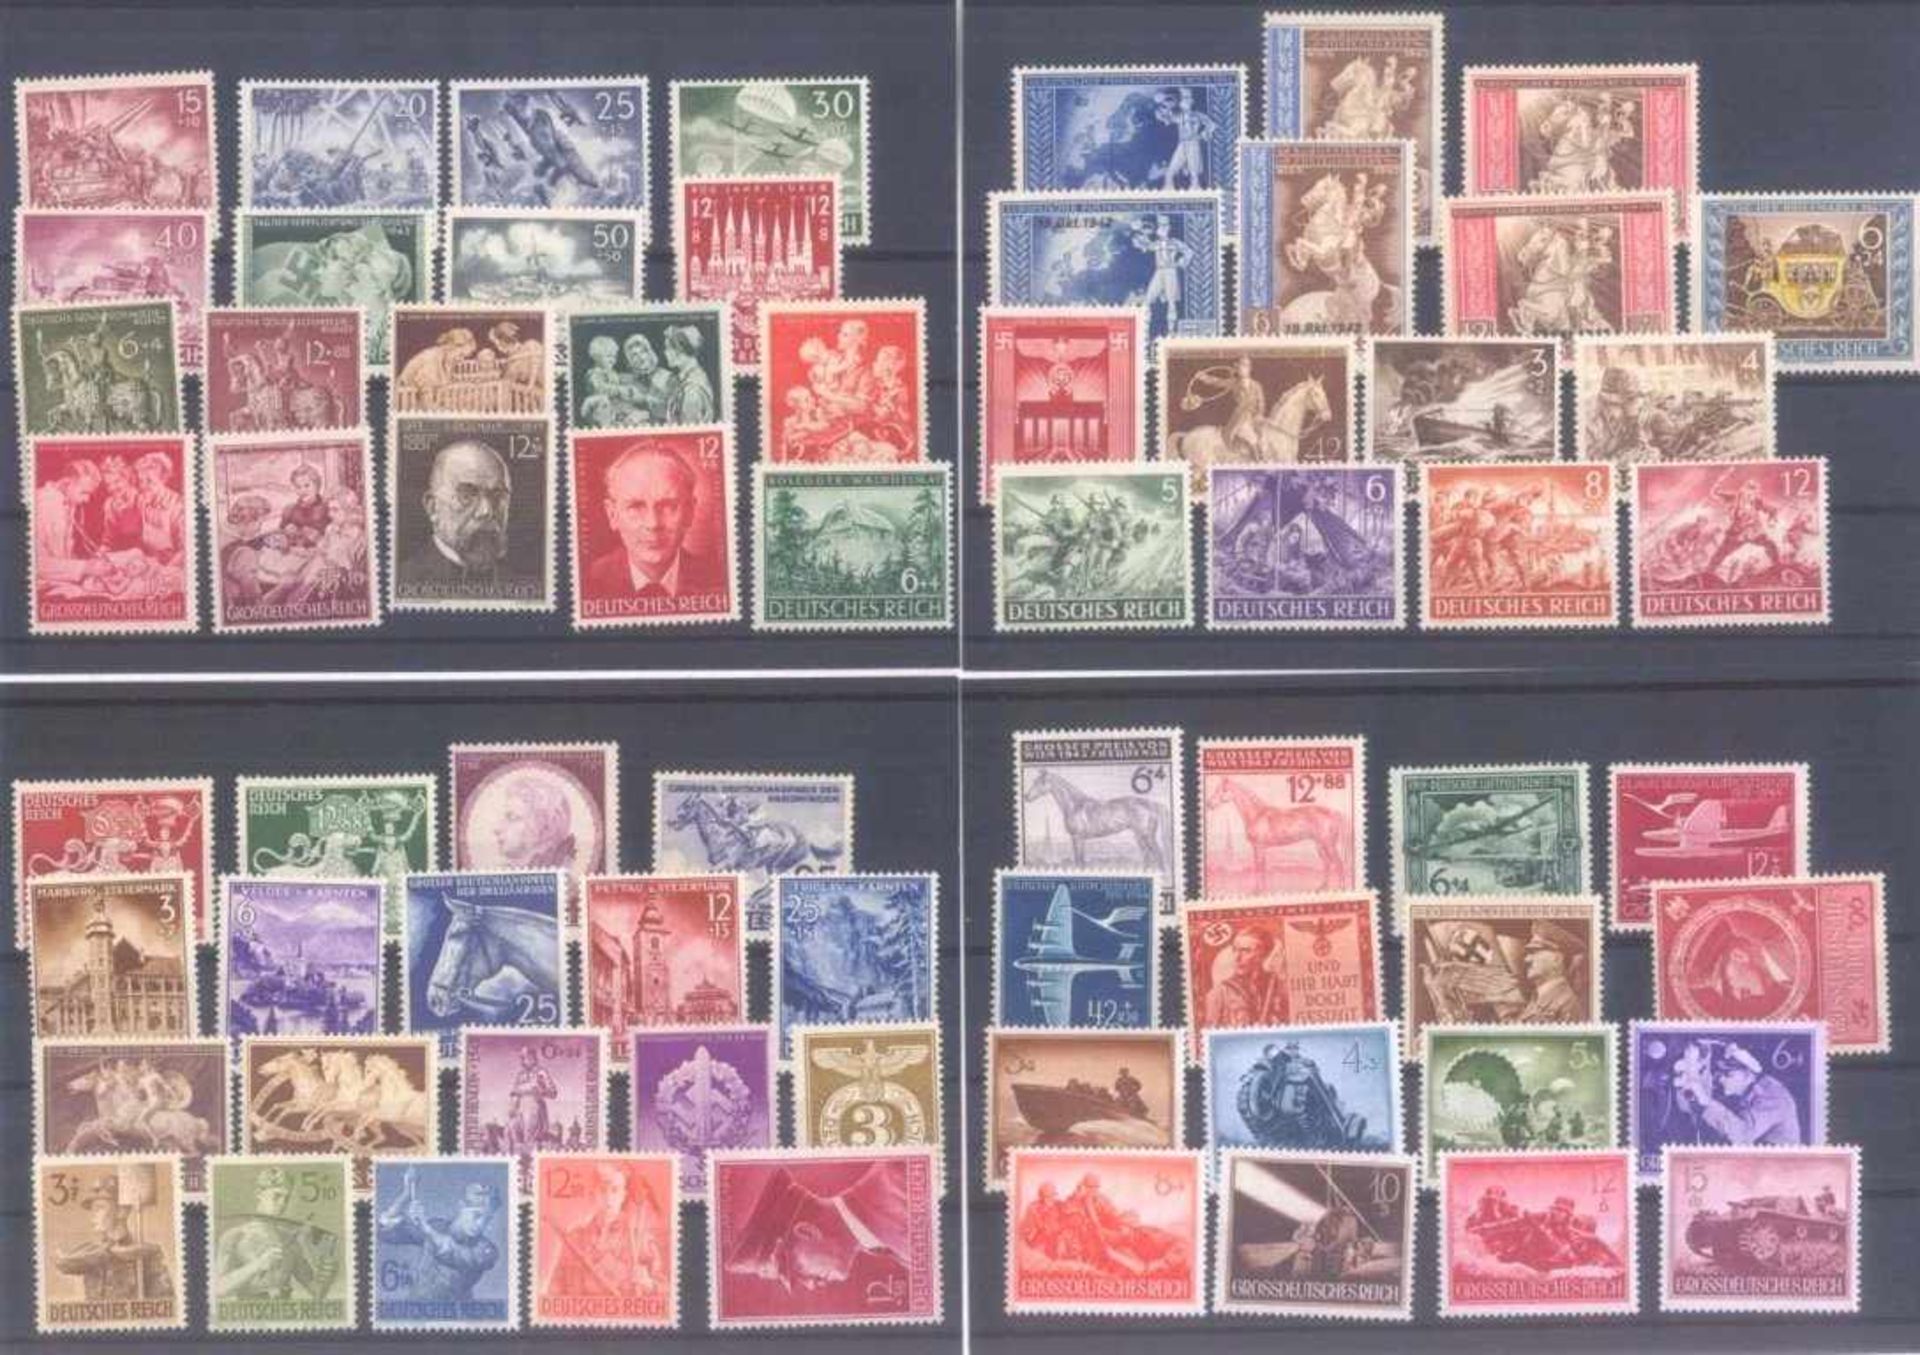 Partie Deutsches Reich, 10 Steckkarten10 Steckkarten voll Briefmarken, komplett gescannt. - Bild 2 aus 3